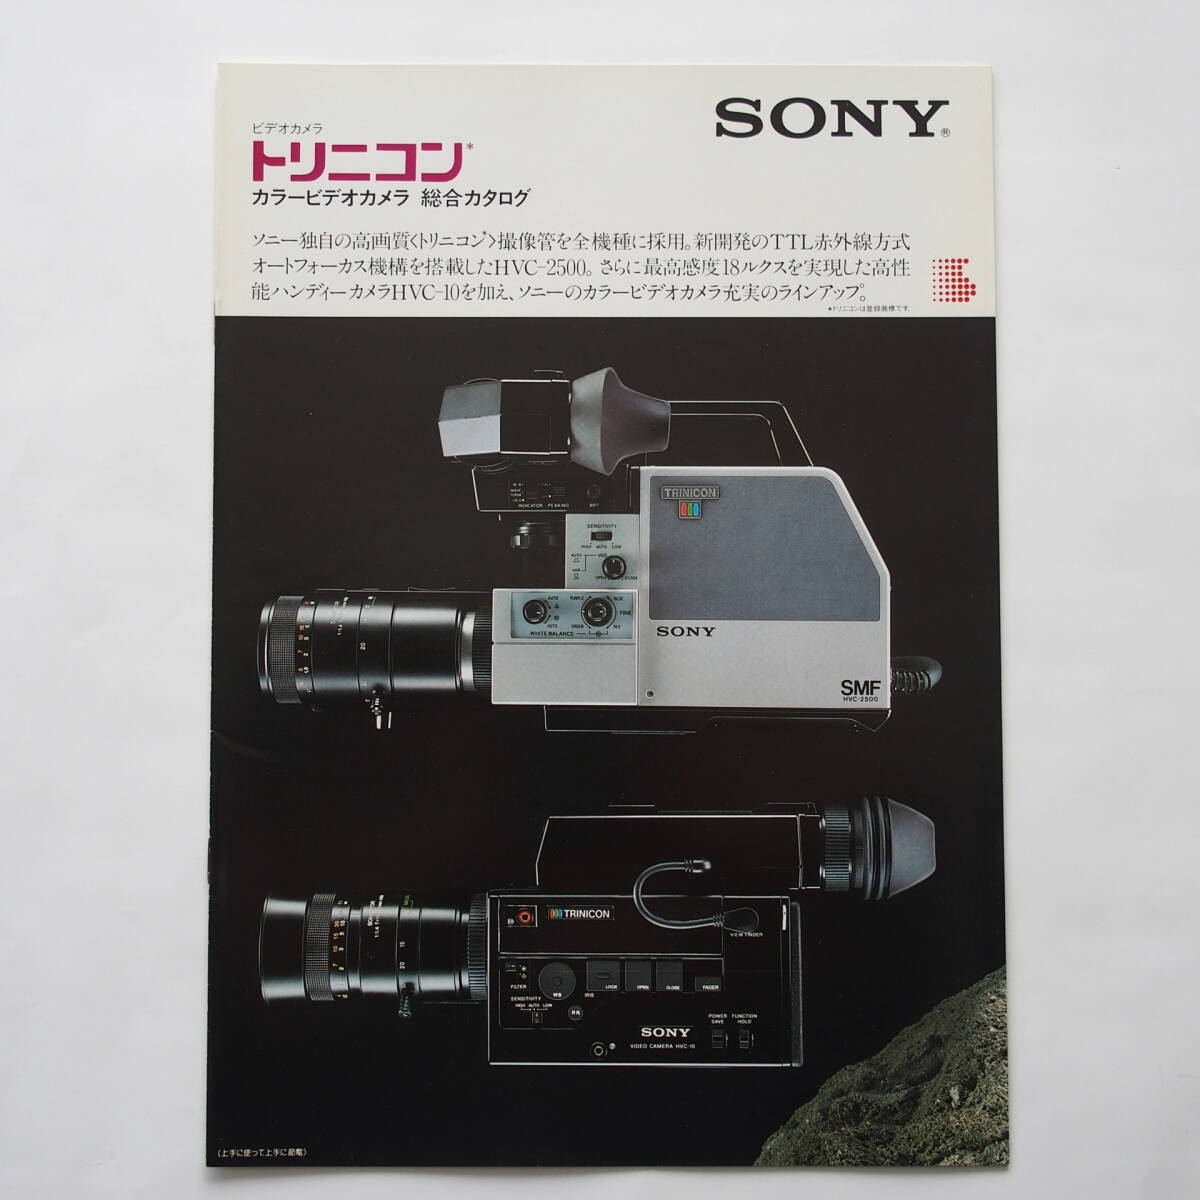 【カタログ2部セット】「SONY トリニコン カラービデオカメラ 総合カタログ」1983年3月 / 「SONY トリニコン HVC-10 カタログ」1983年3月の画像2